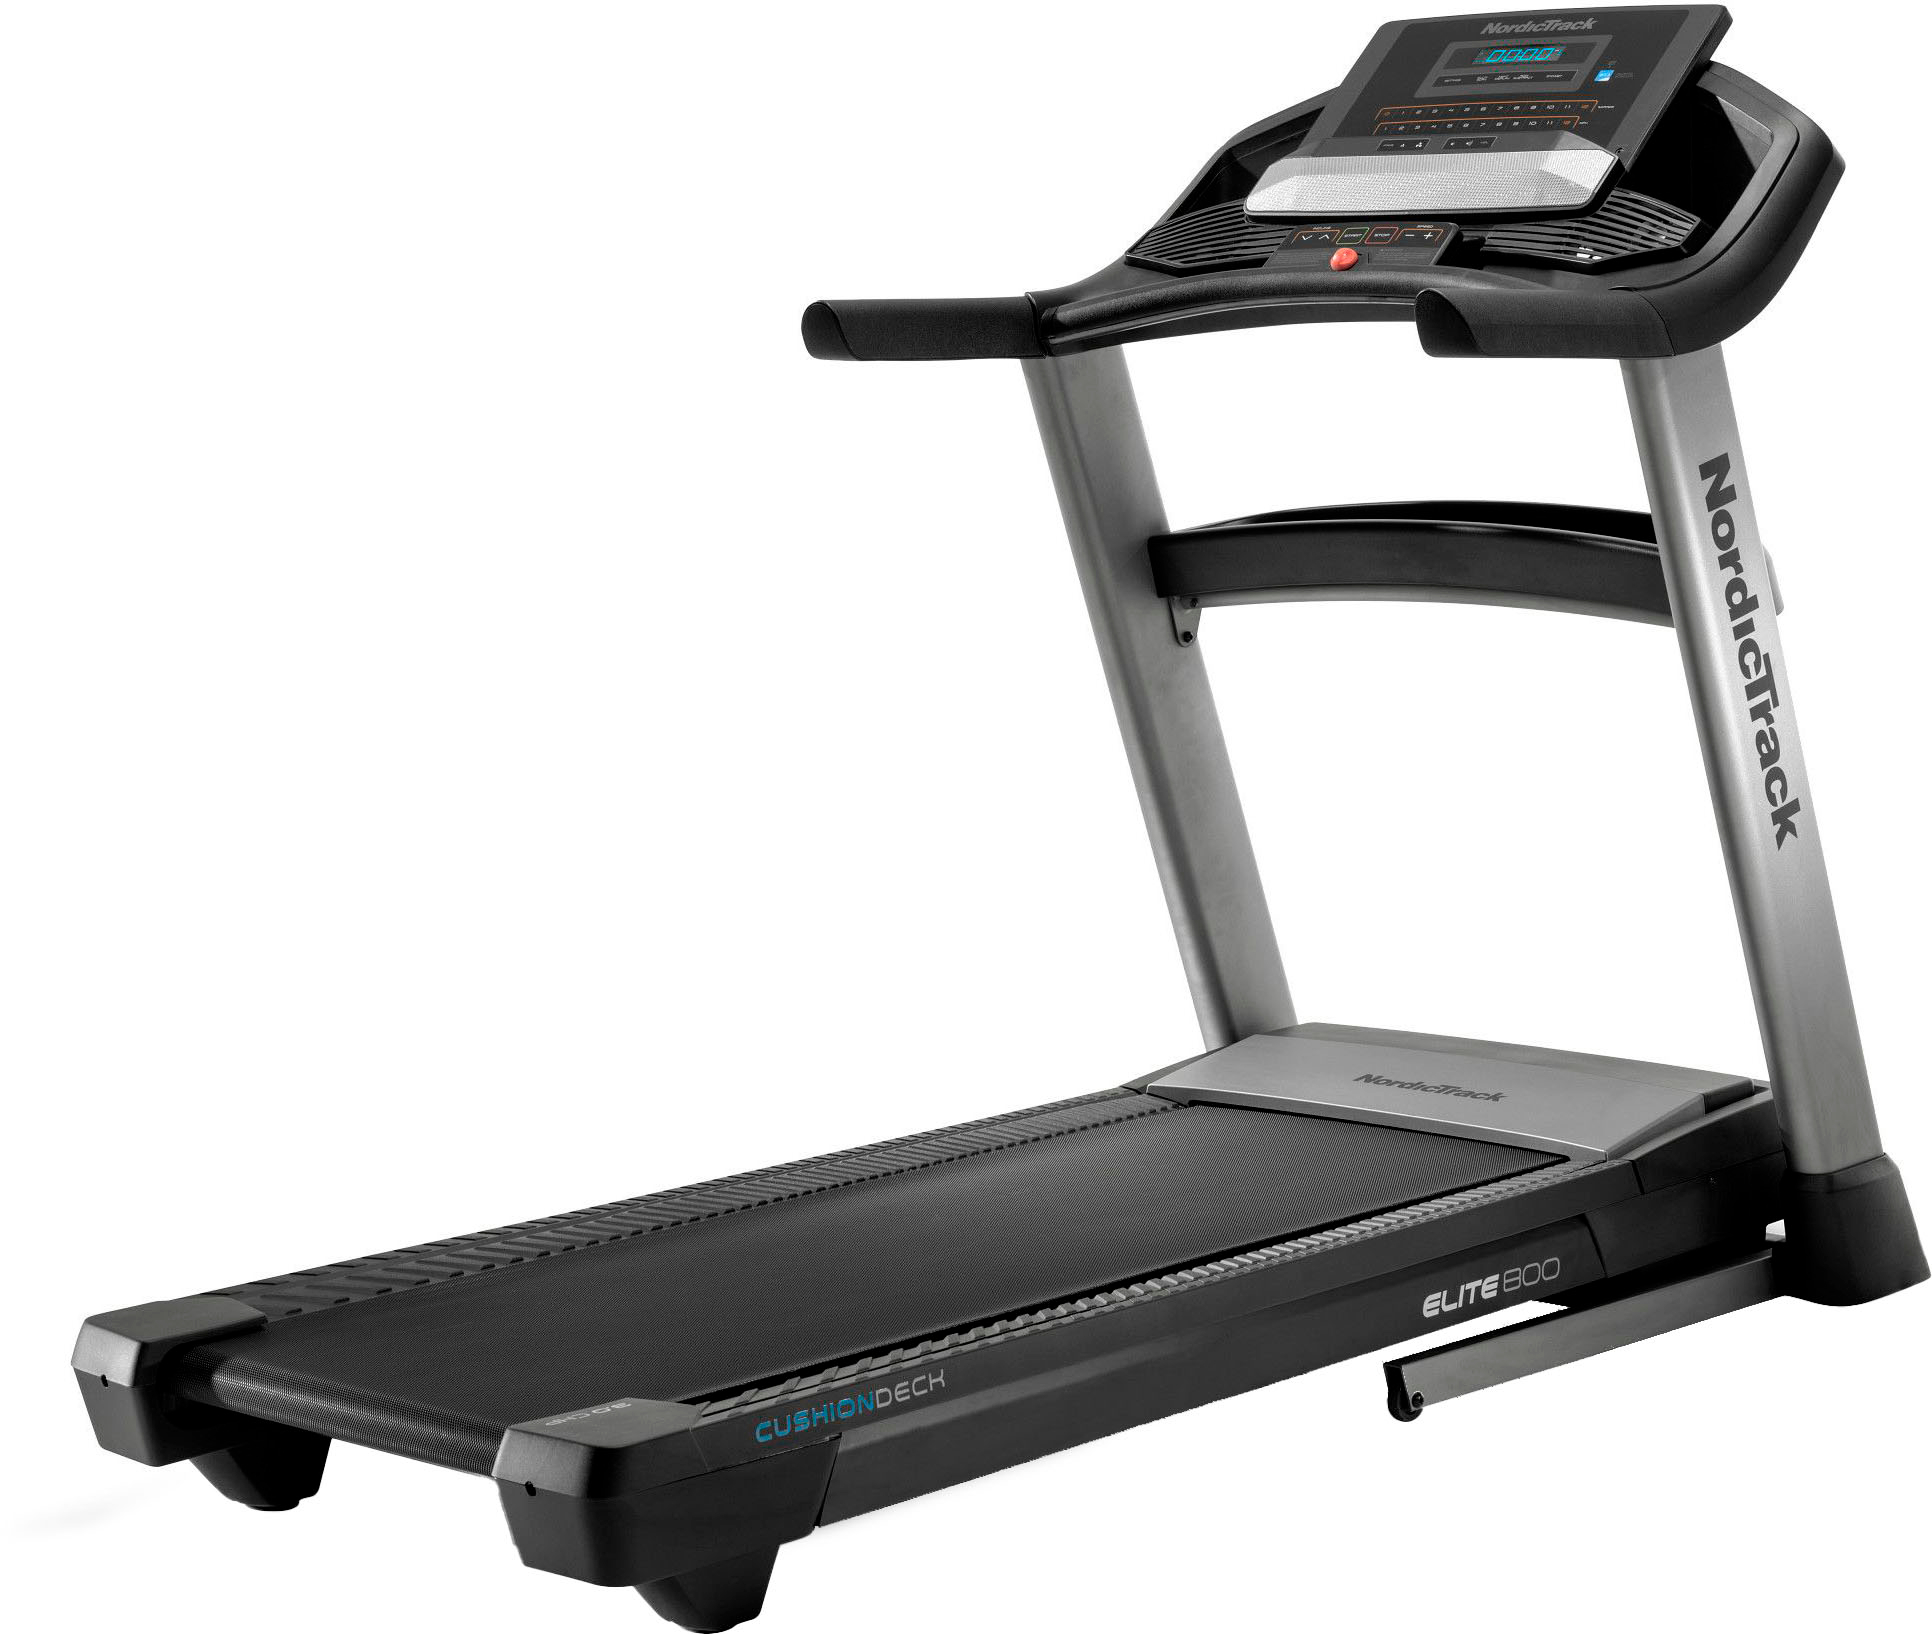 NordicTrack - Elite 800 Treadmill - Black & Grey